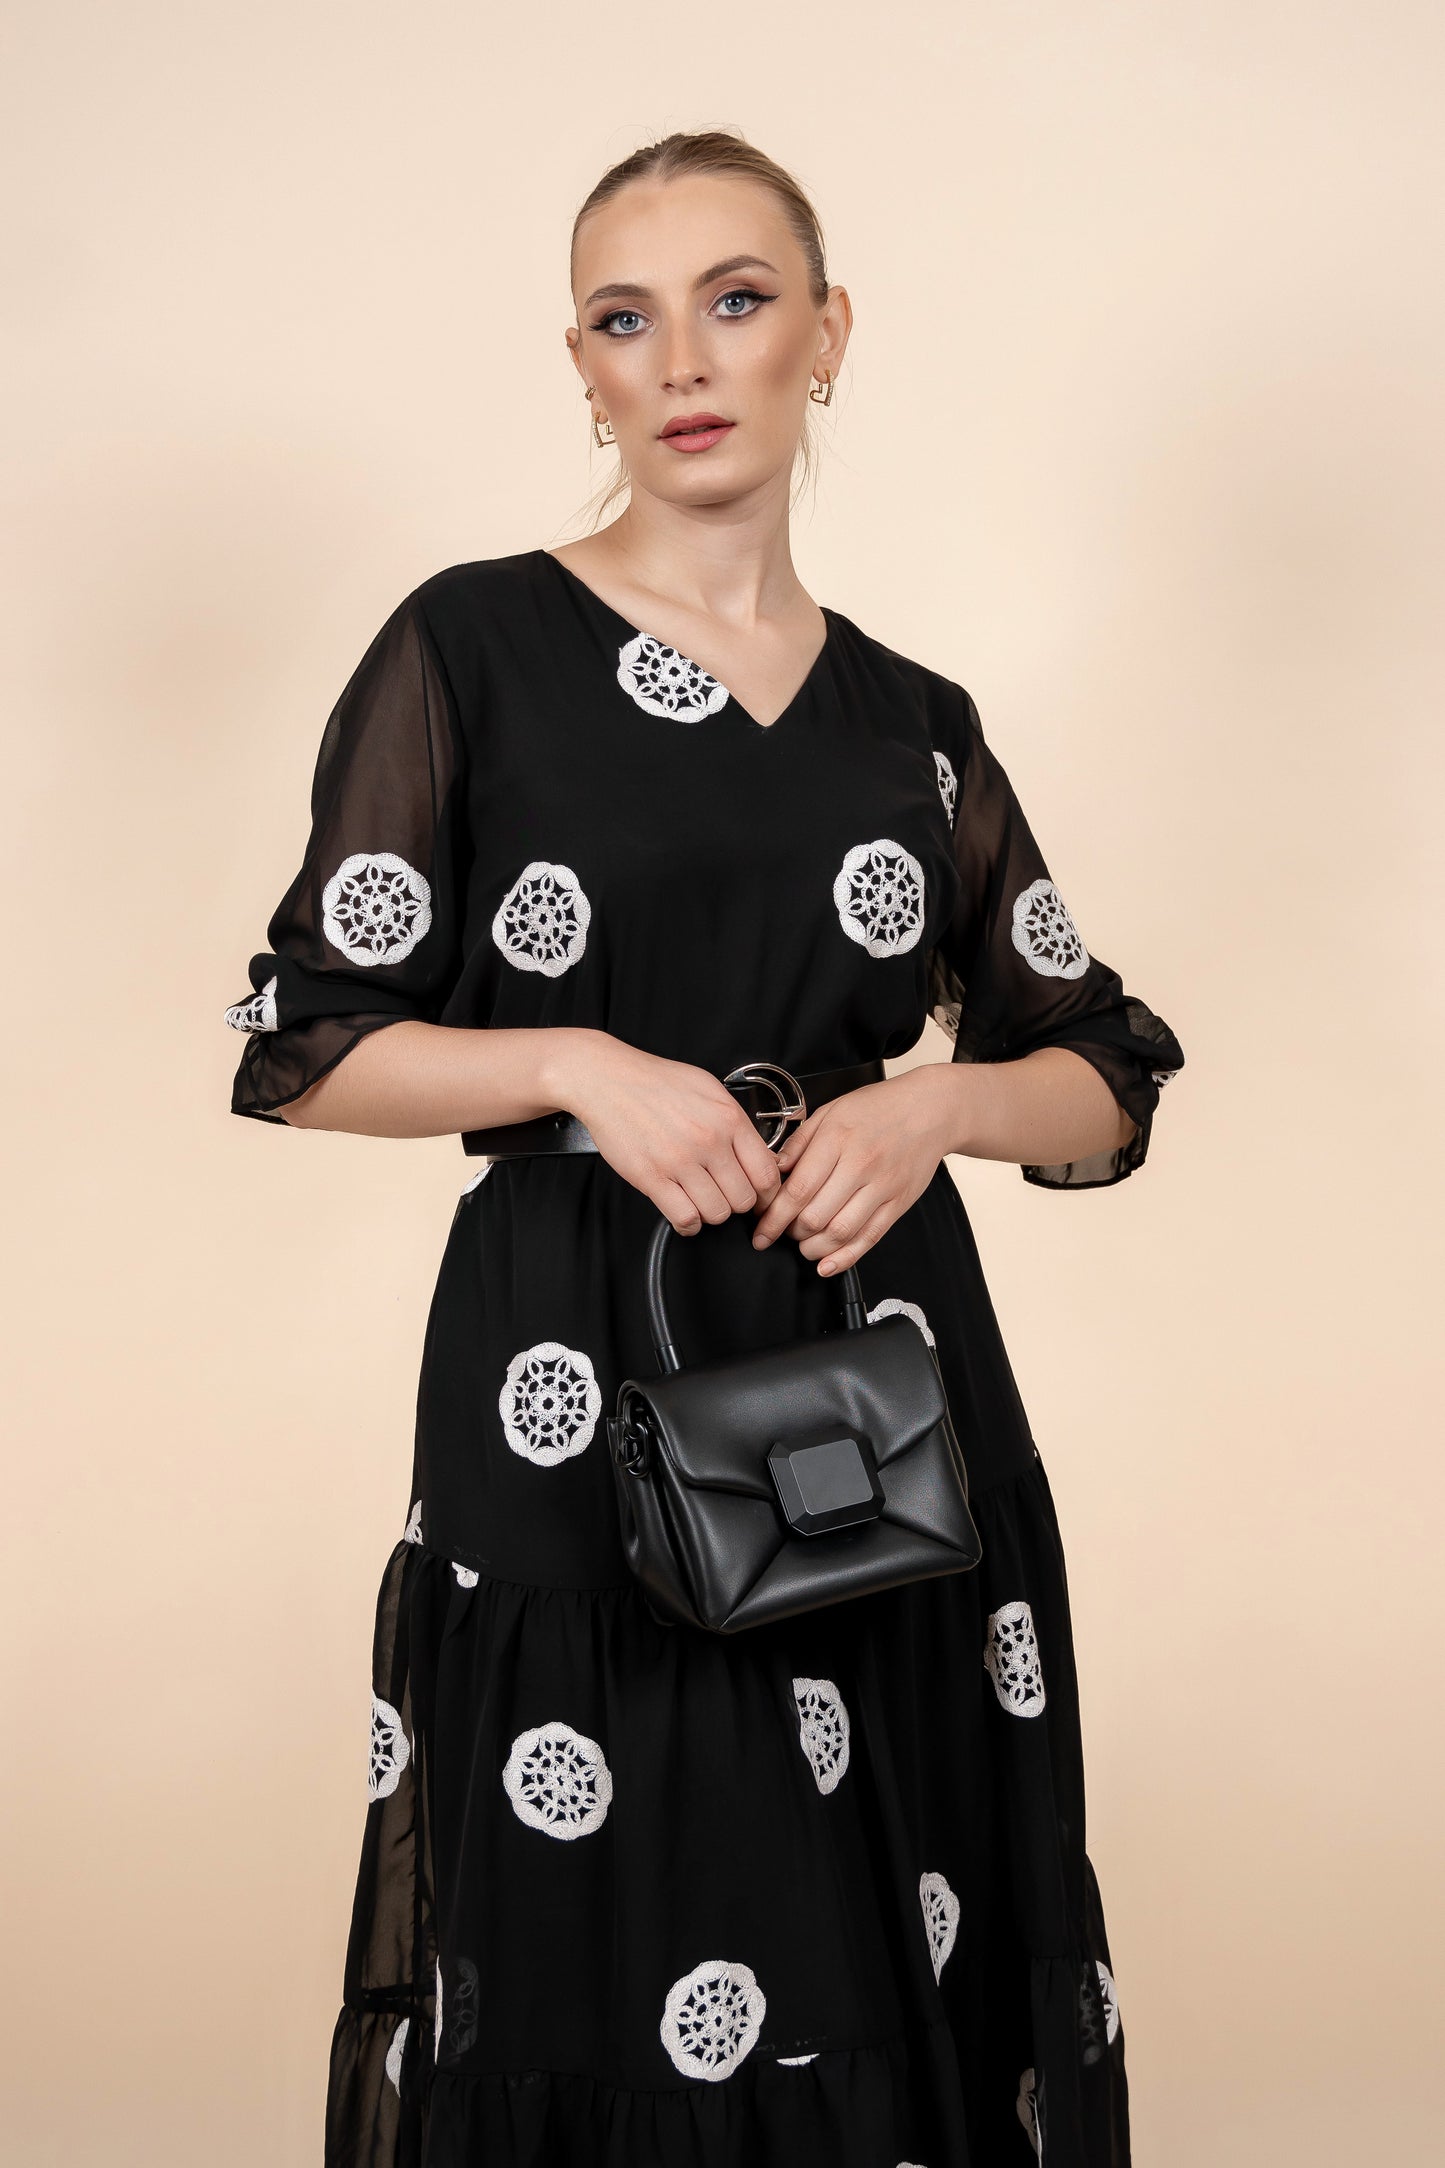 Mathilde -  bezvremenska elegancija crne haljine